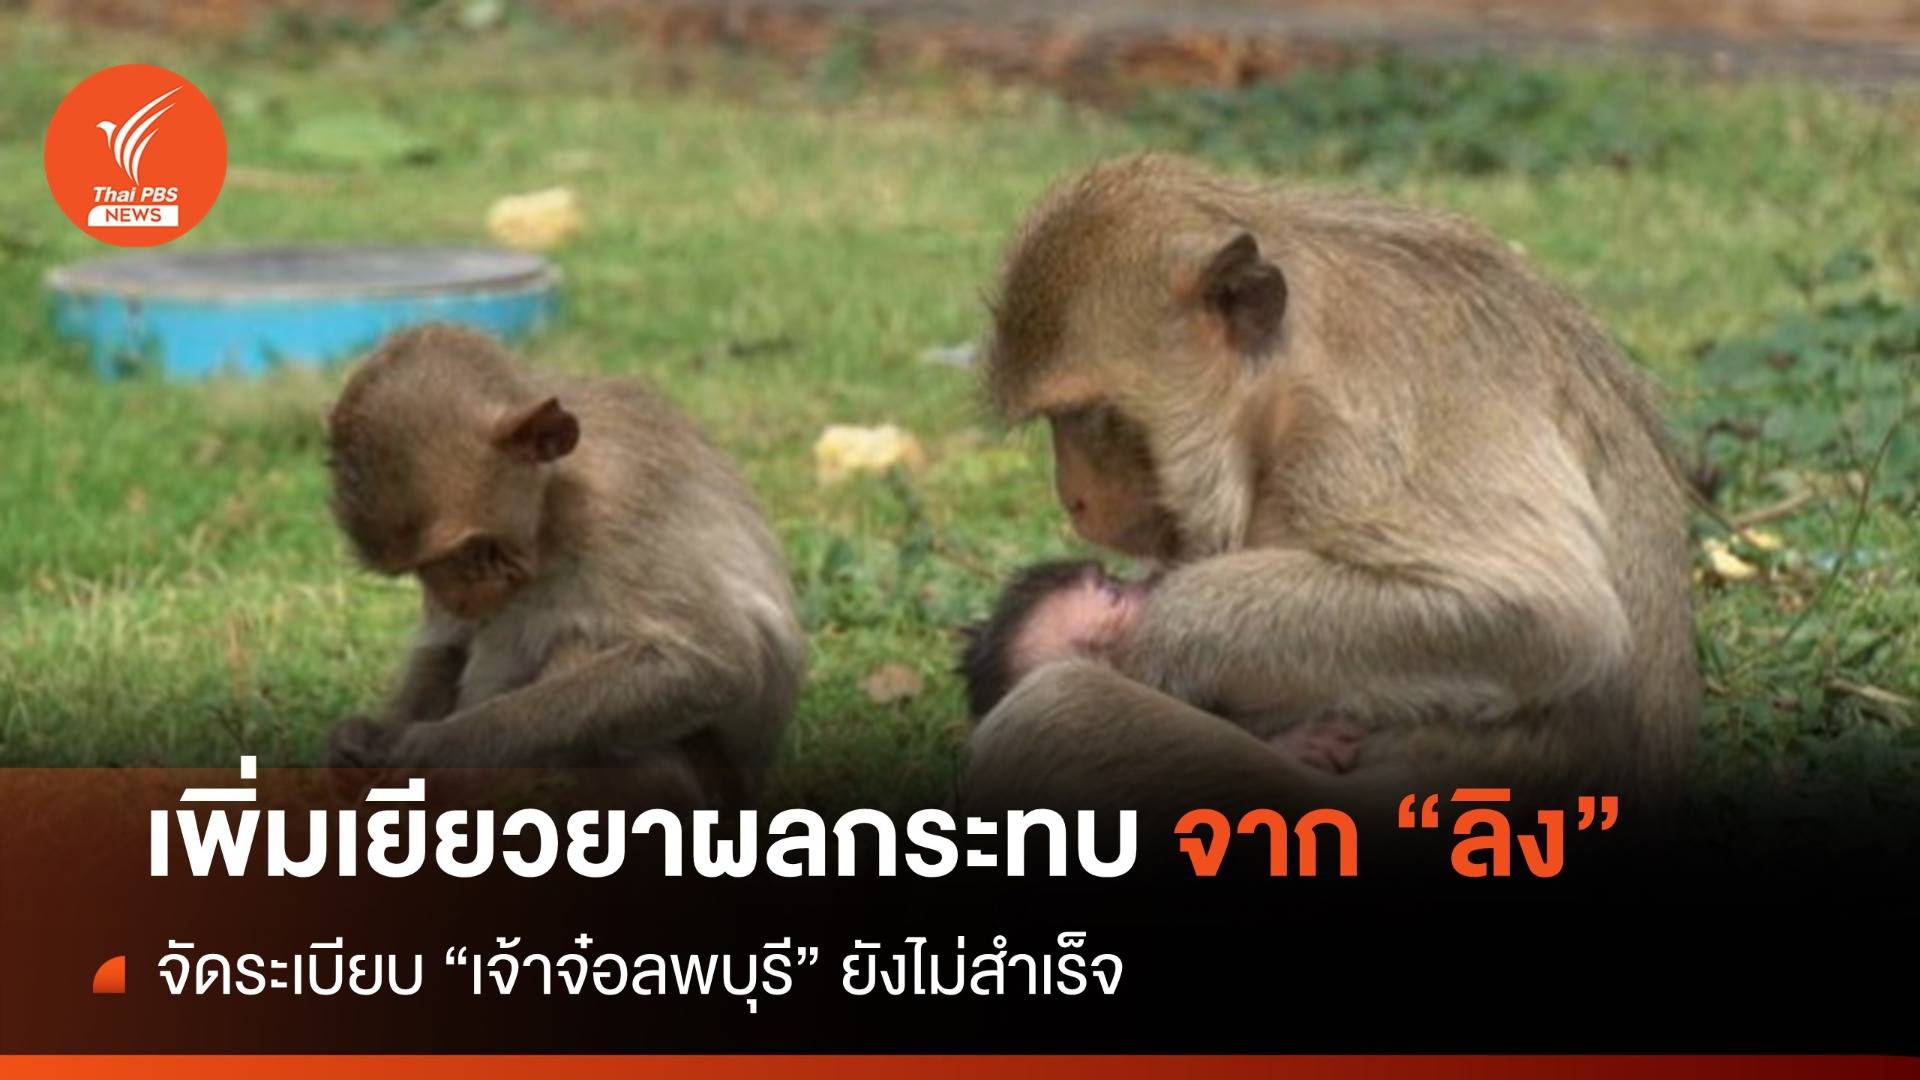 อุทยานฯ ทบทวนระเบียบเยียวยาผู้เสียหายจากลิง 